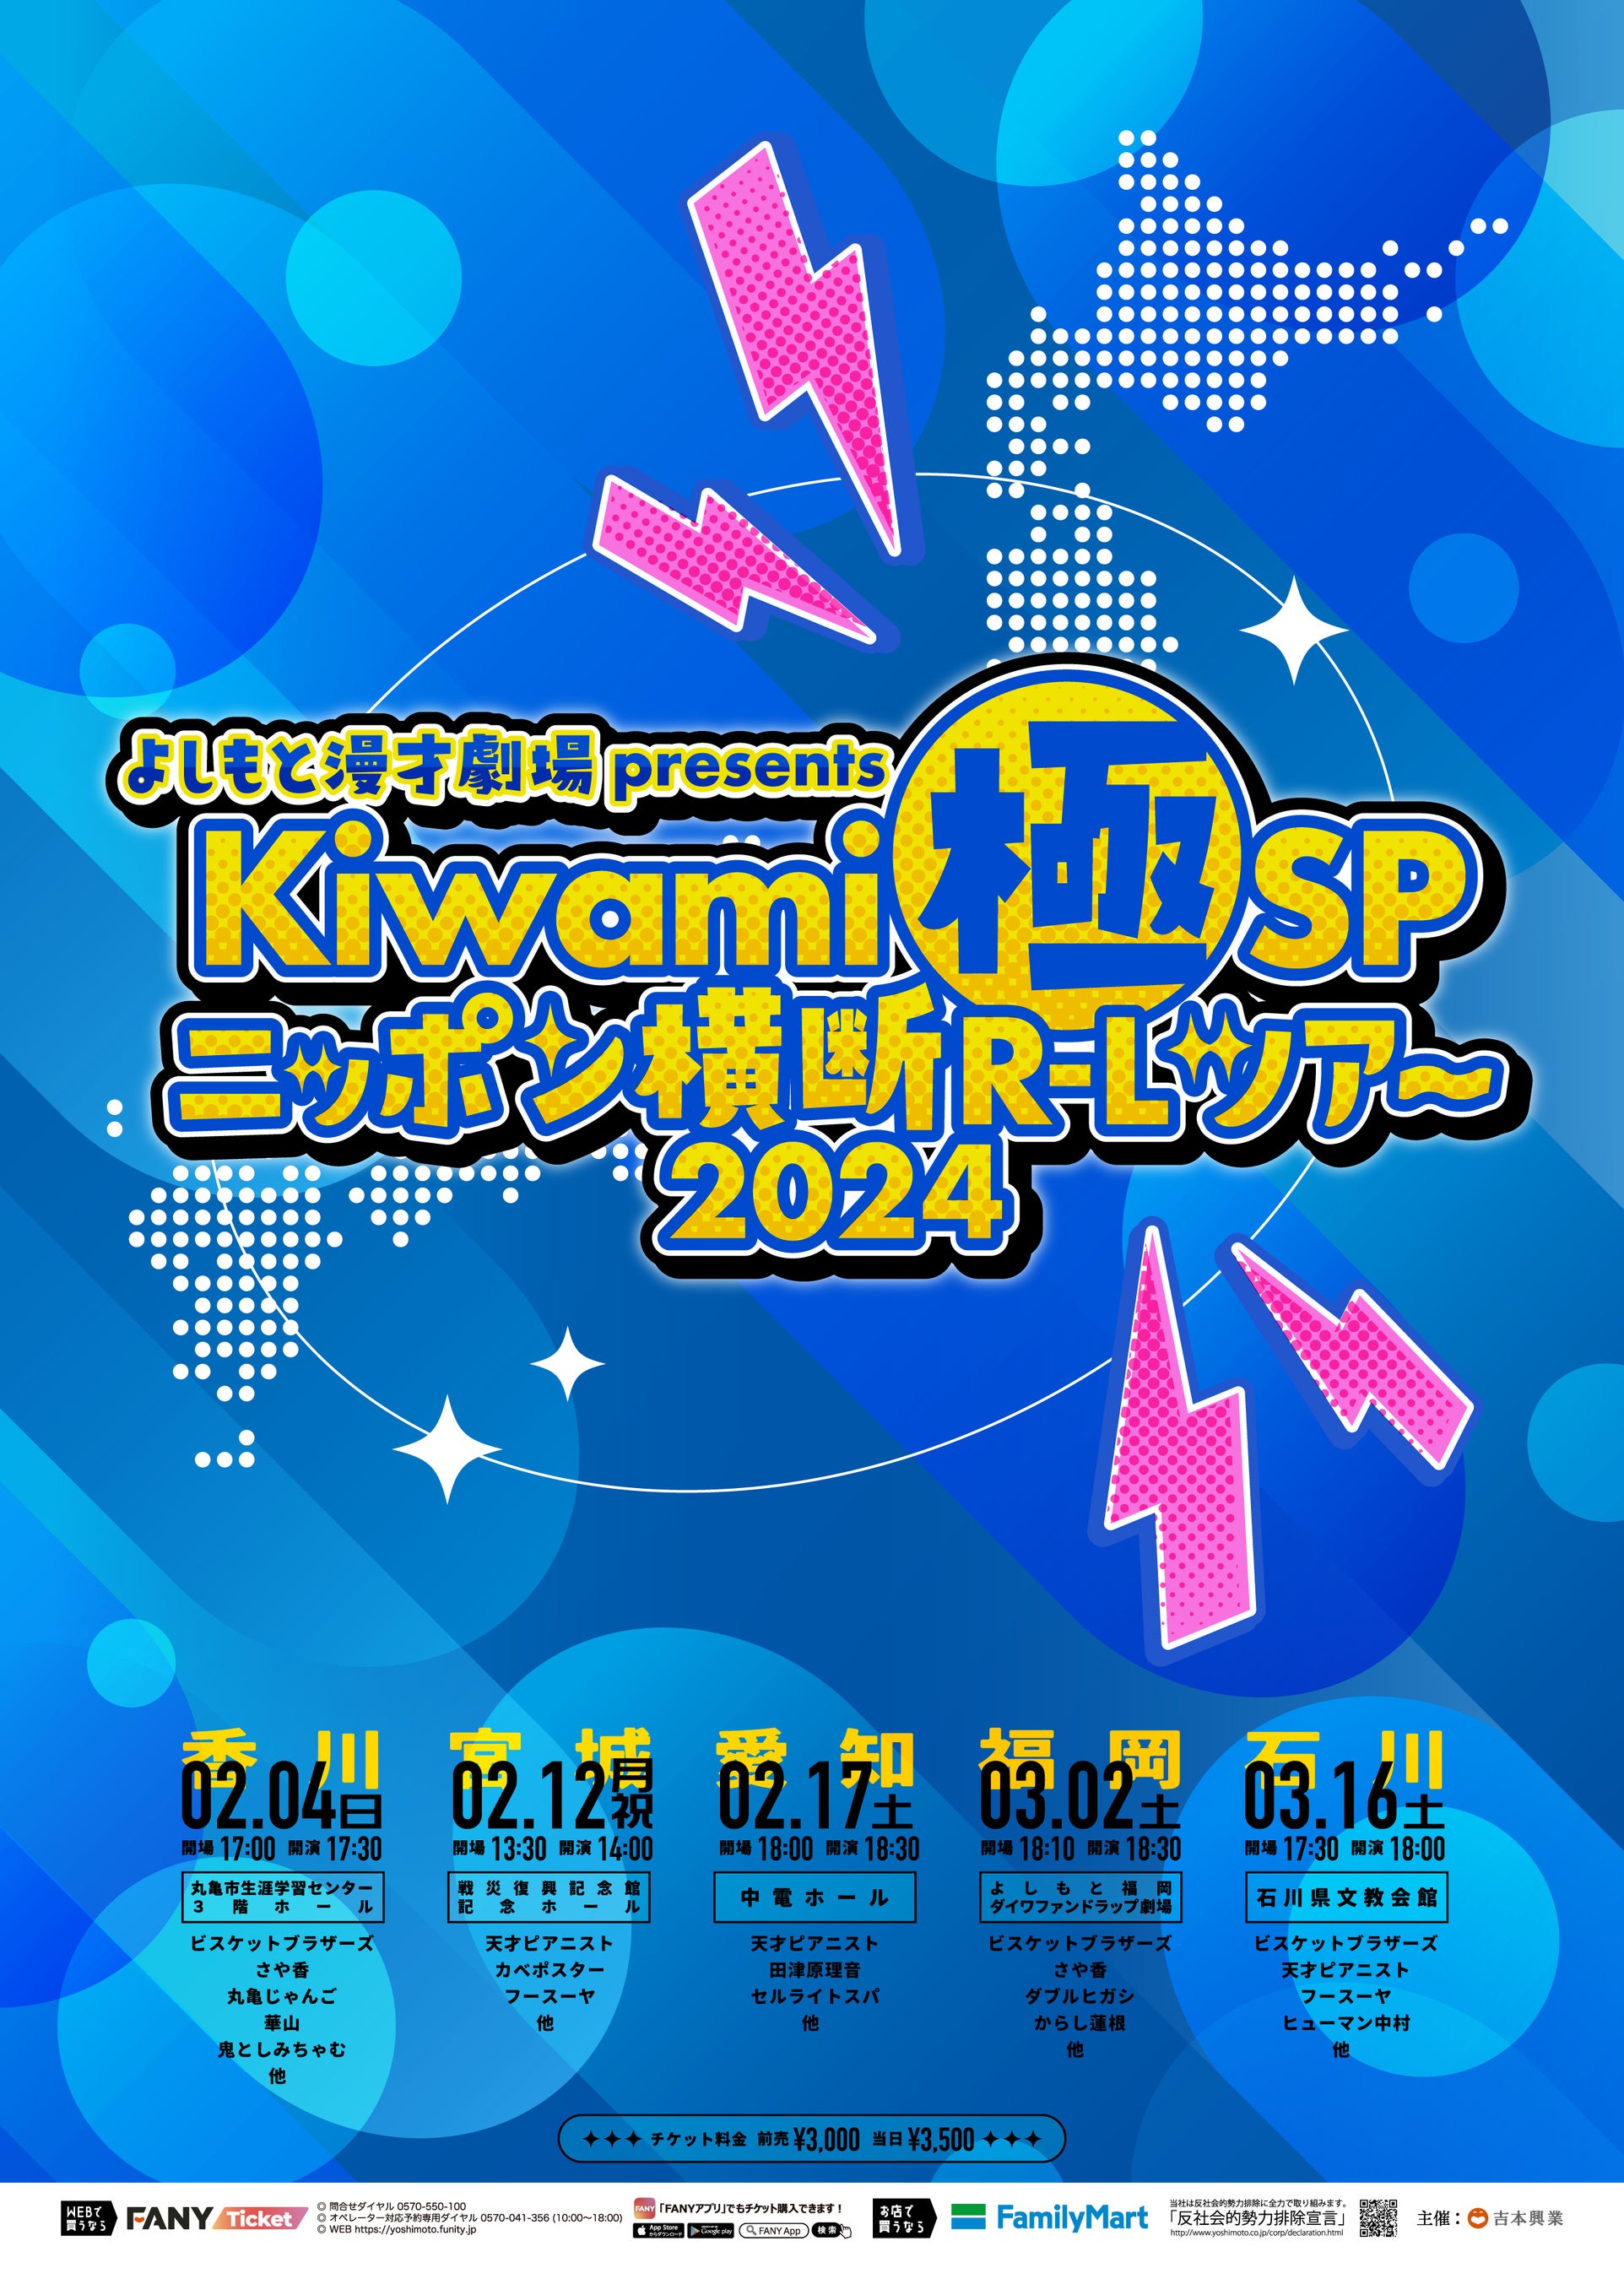 マンゲキメンバーでの全国ツアーは史上初！よしもと漫才劇場presents「Kiwami極SPニッポン横断R-Lツアー2024」開催決定！